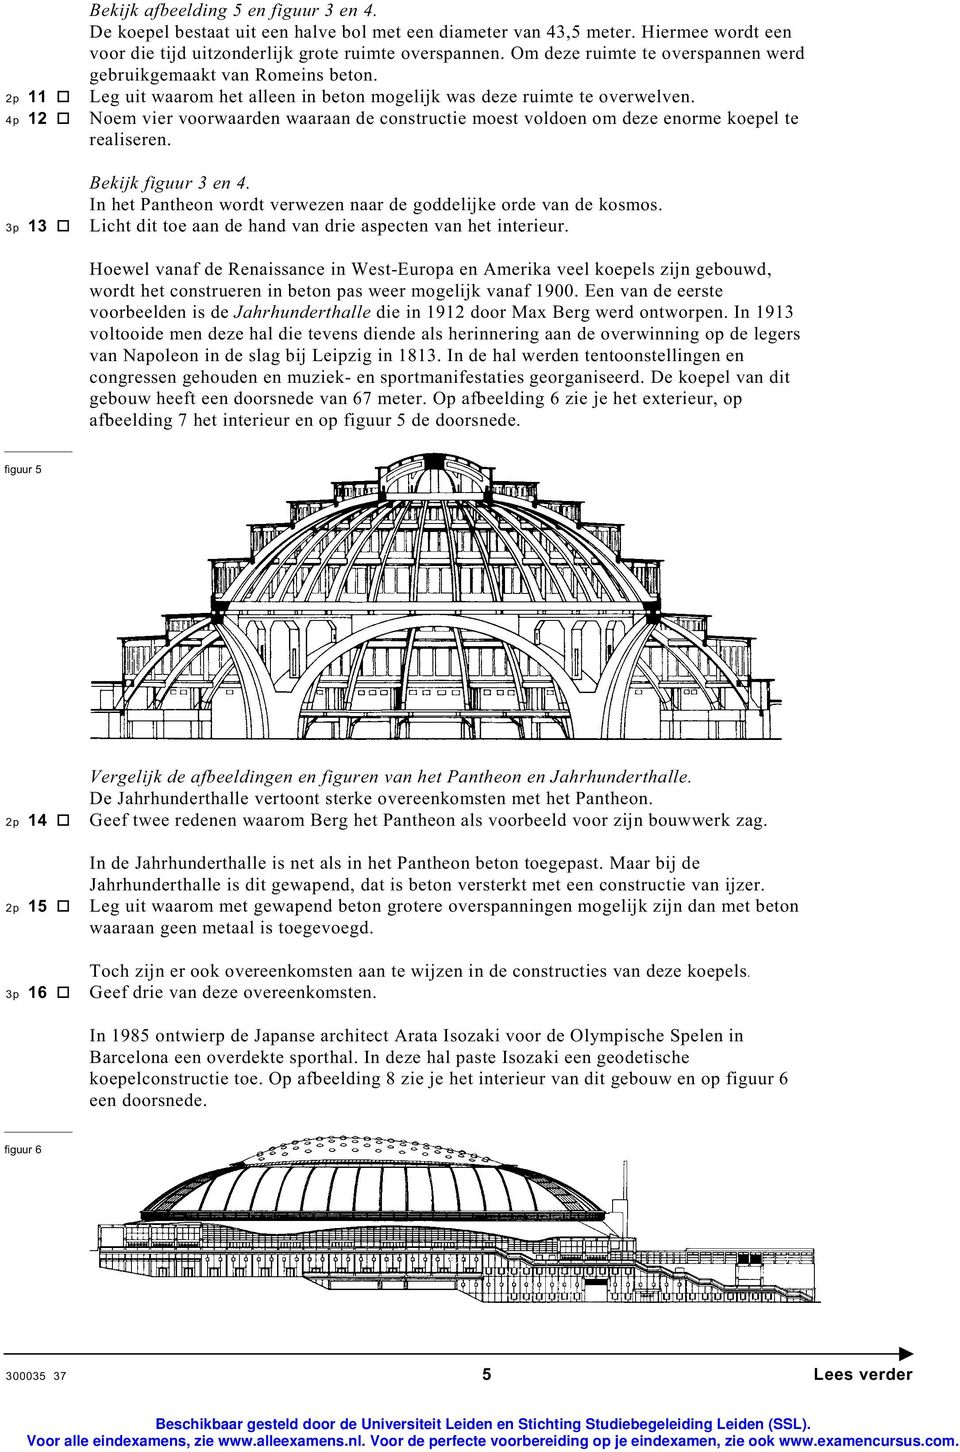 4p 12 Noem vier voorwaarden waaraan de constructie moest voldoen om deze enorme koepel te realiseren. Bekijk figuur 3 en 4. In het Pantheon wordt verwezen naar de goddelijke orde van de kosmos.